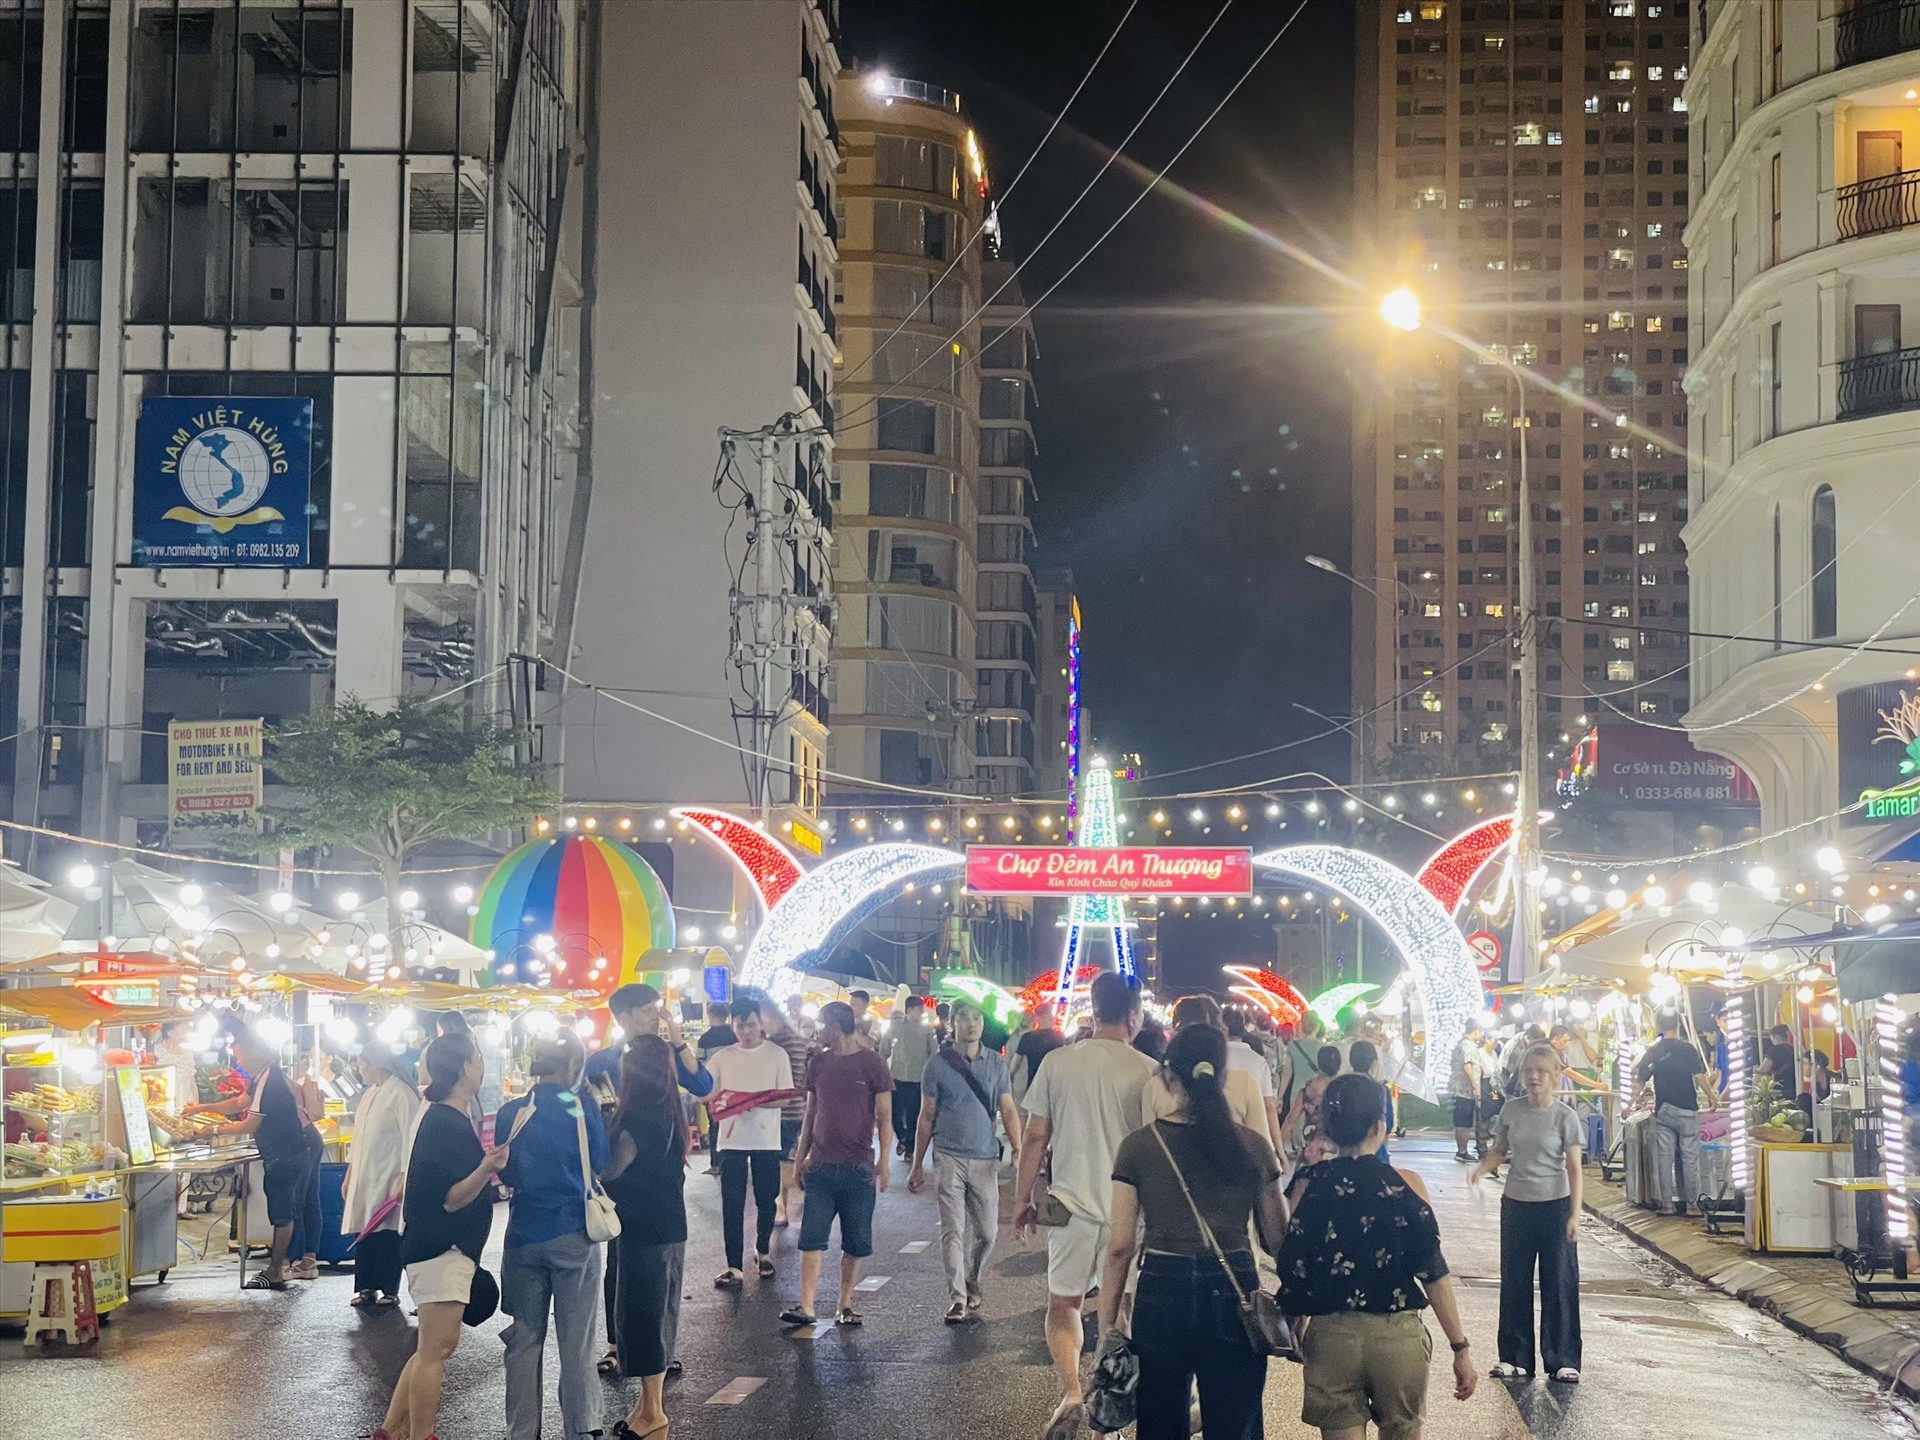 Chợ đêm An Thượng được tổ chức trên vỉa hè đường Trần Bạch Đằng. Ảnh: Mai Hương